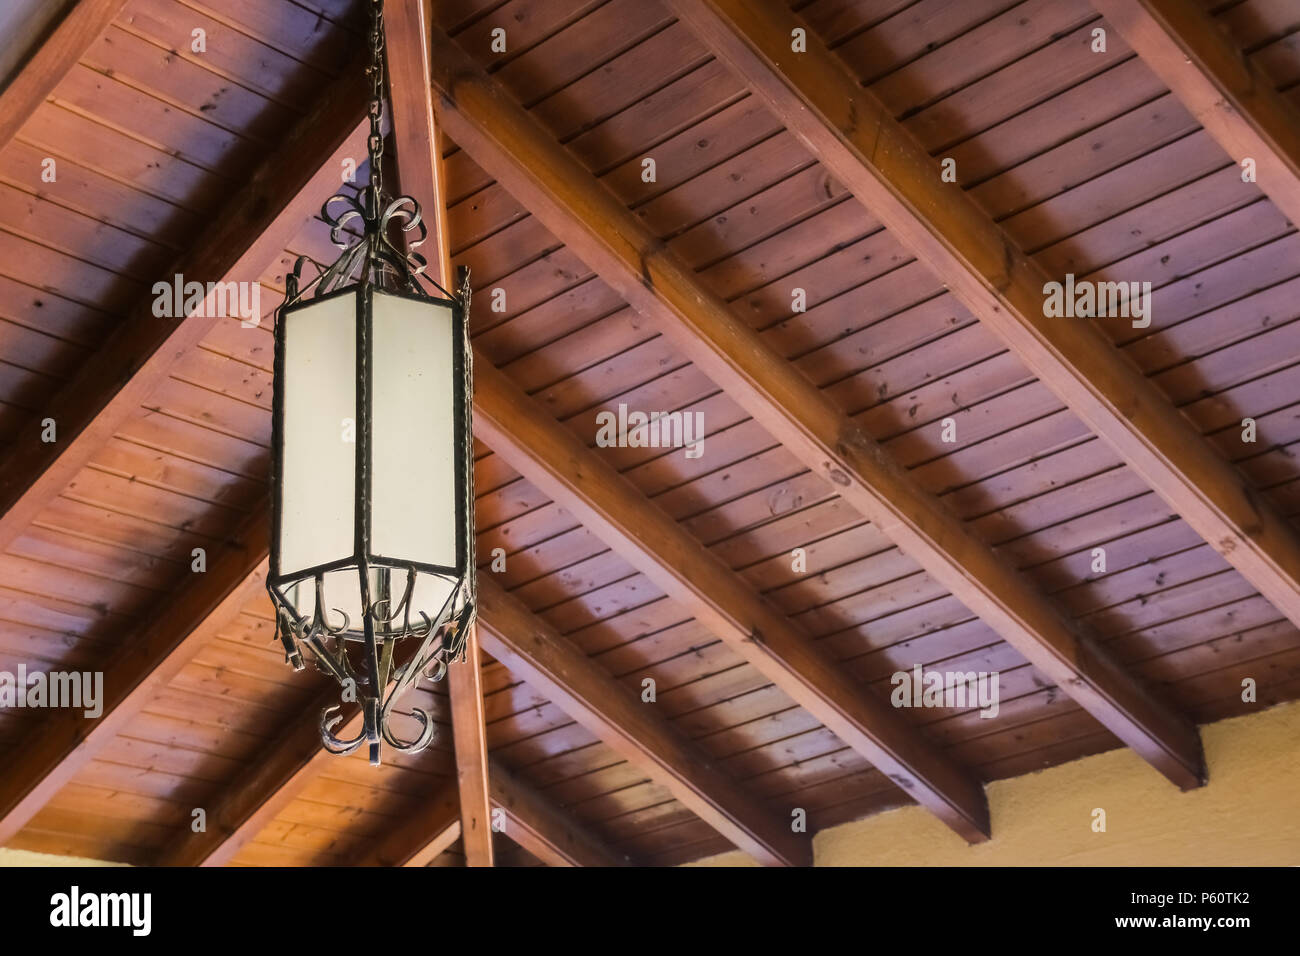 Lámparas colgantes decoración linterna en mimbre de madera hechas de bambú.  Luces artificiales colgando de la viga de madera preciosa lámpara linterna,  colgando de techos de madera. Espacio para copiar texto. Estilo